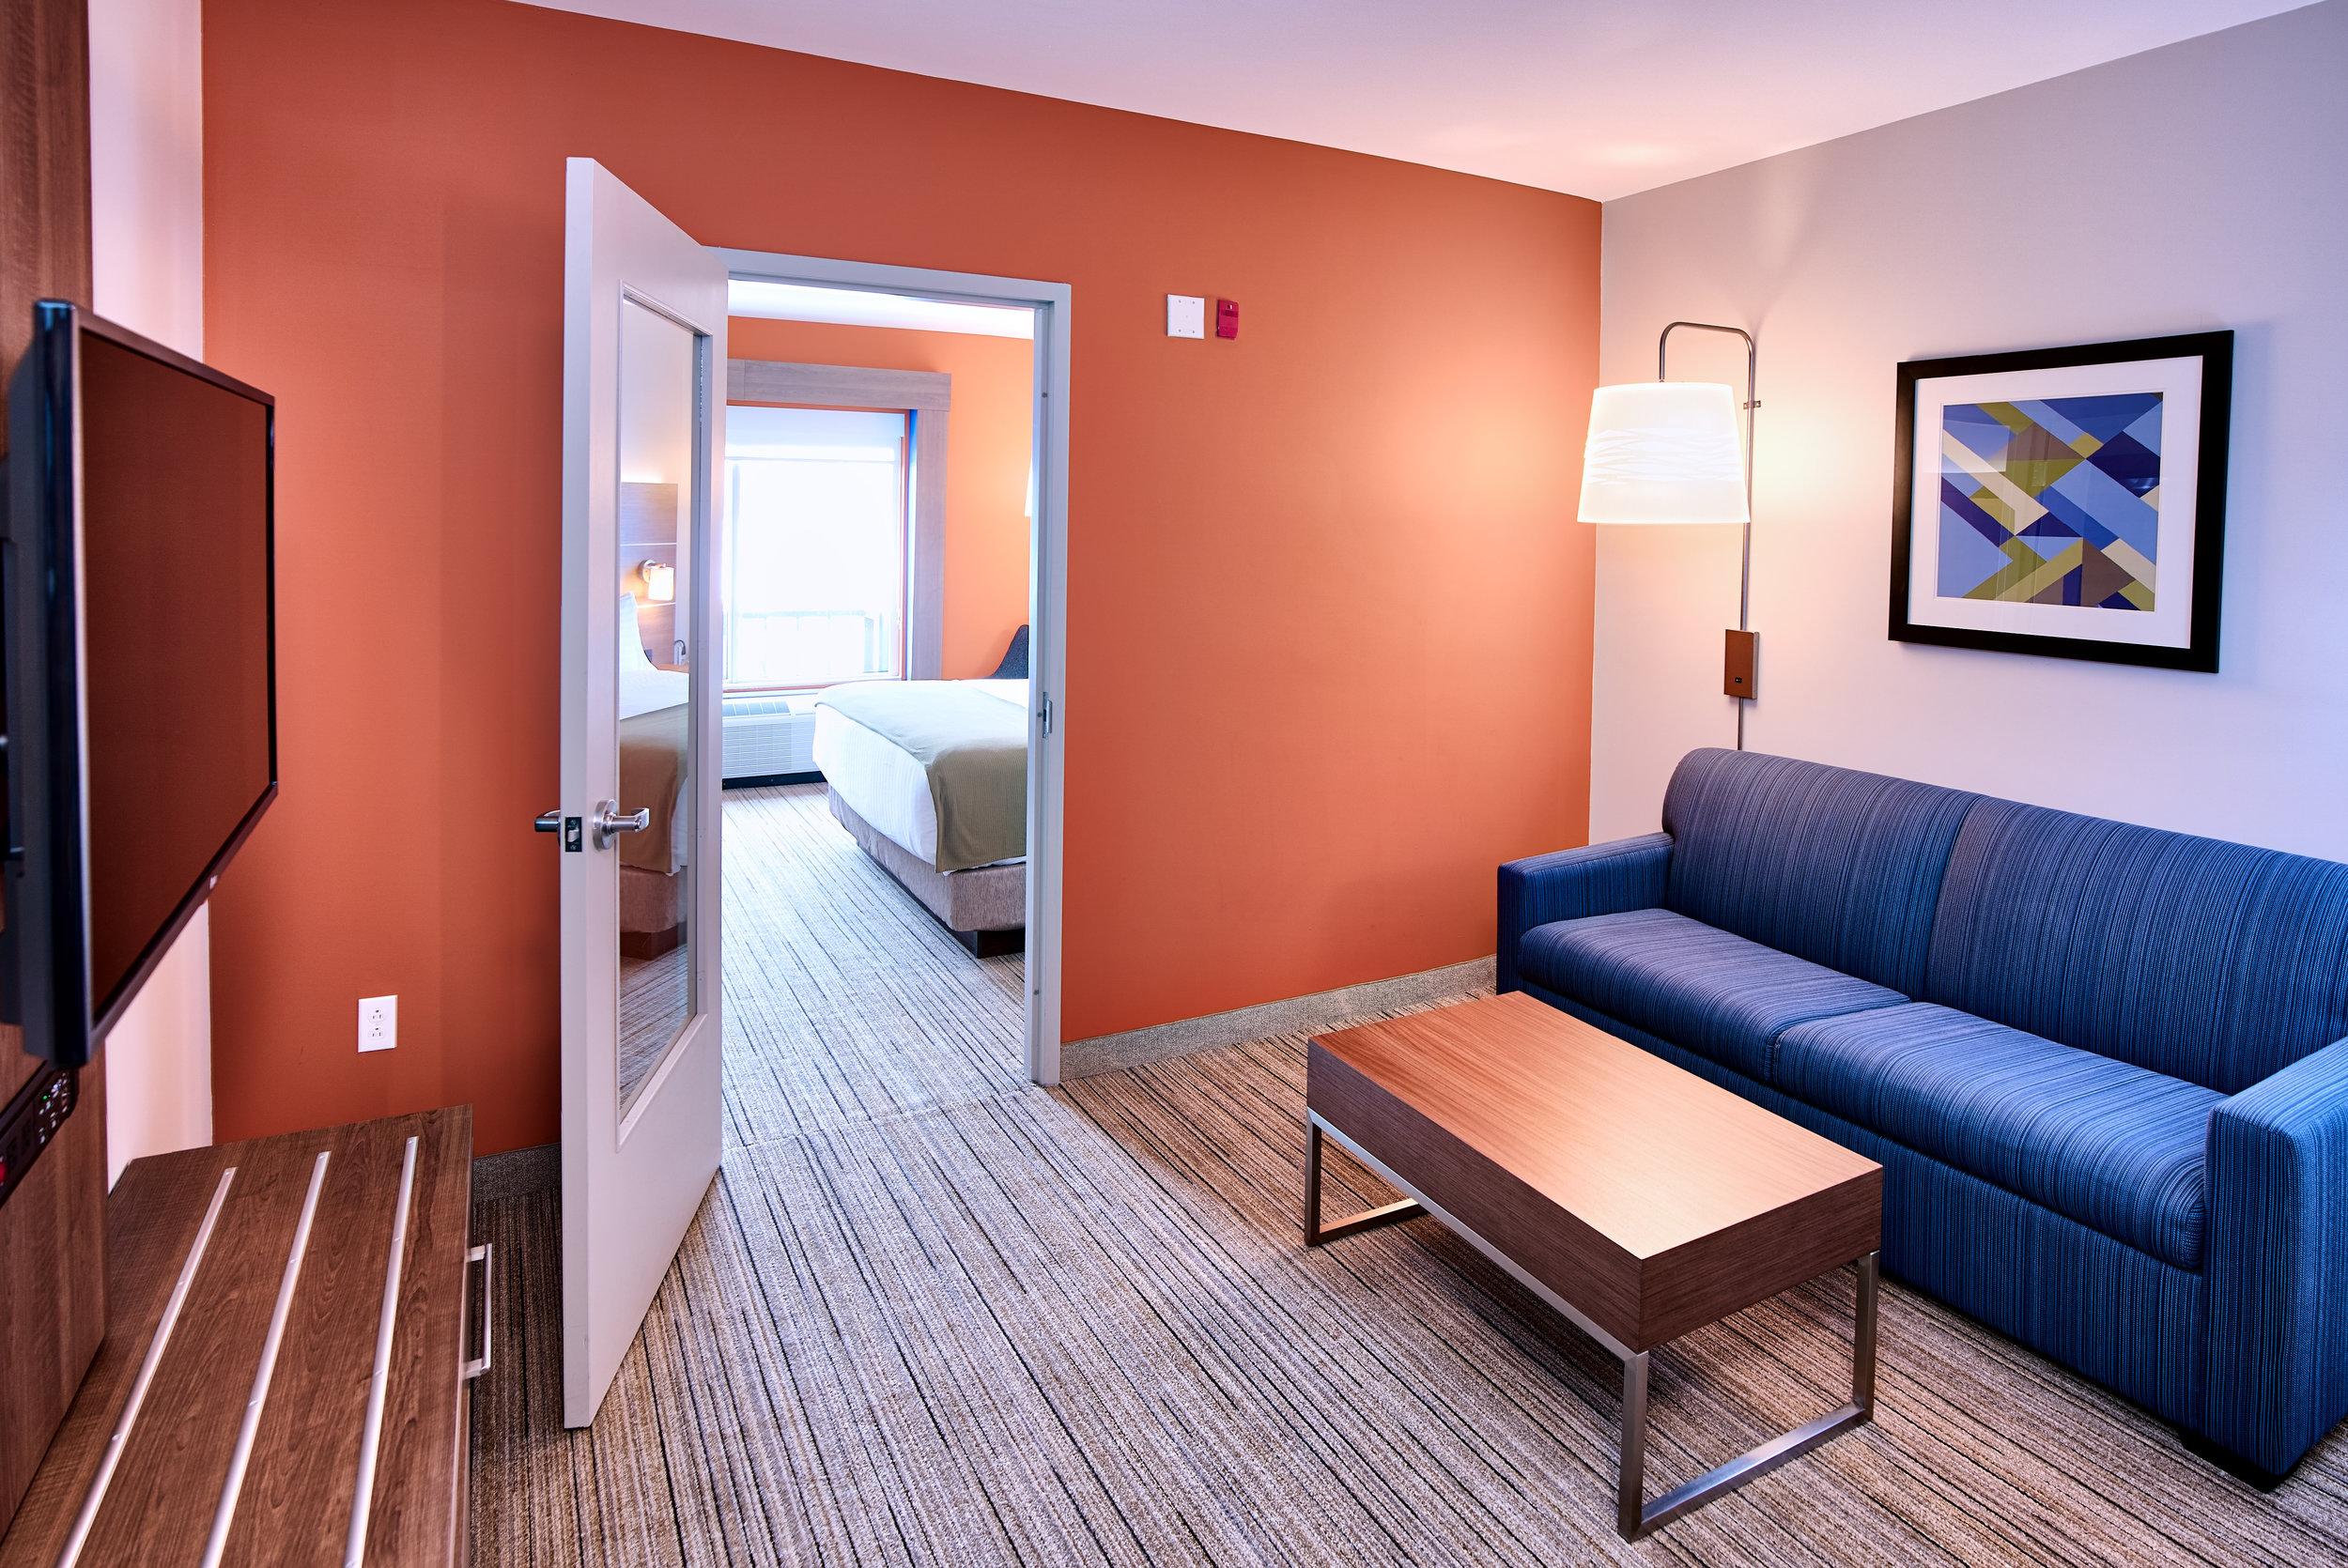 Holiday Inn Express - Room 1 C.jpg